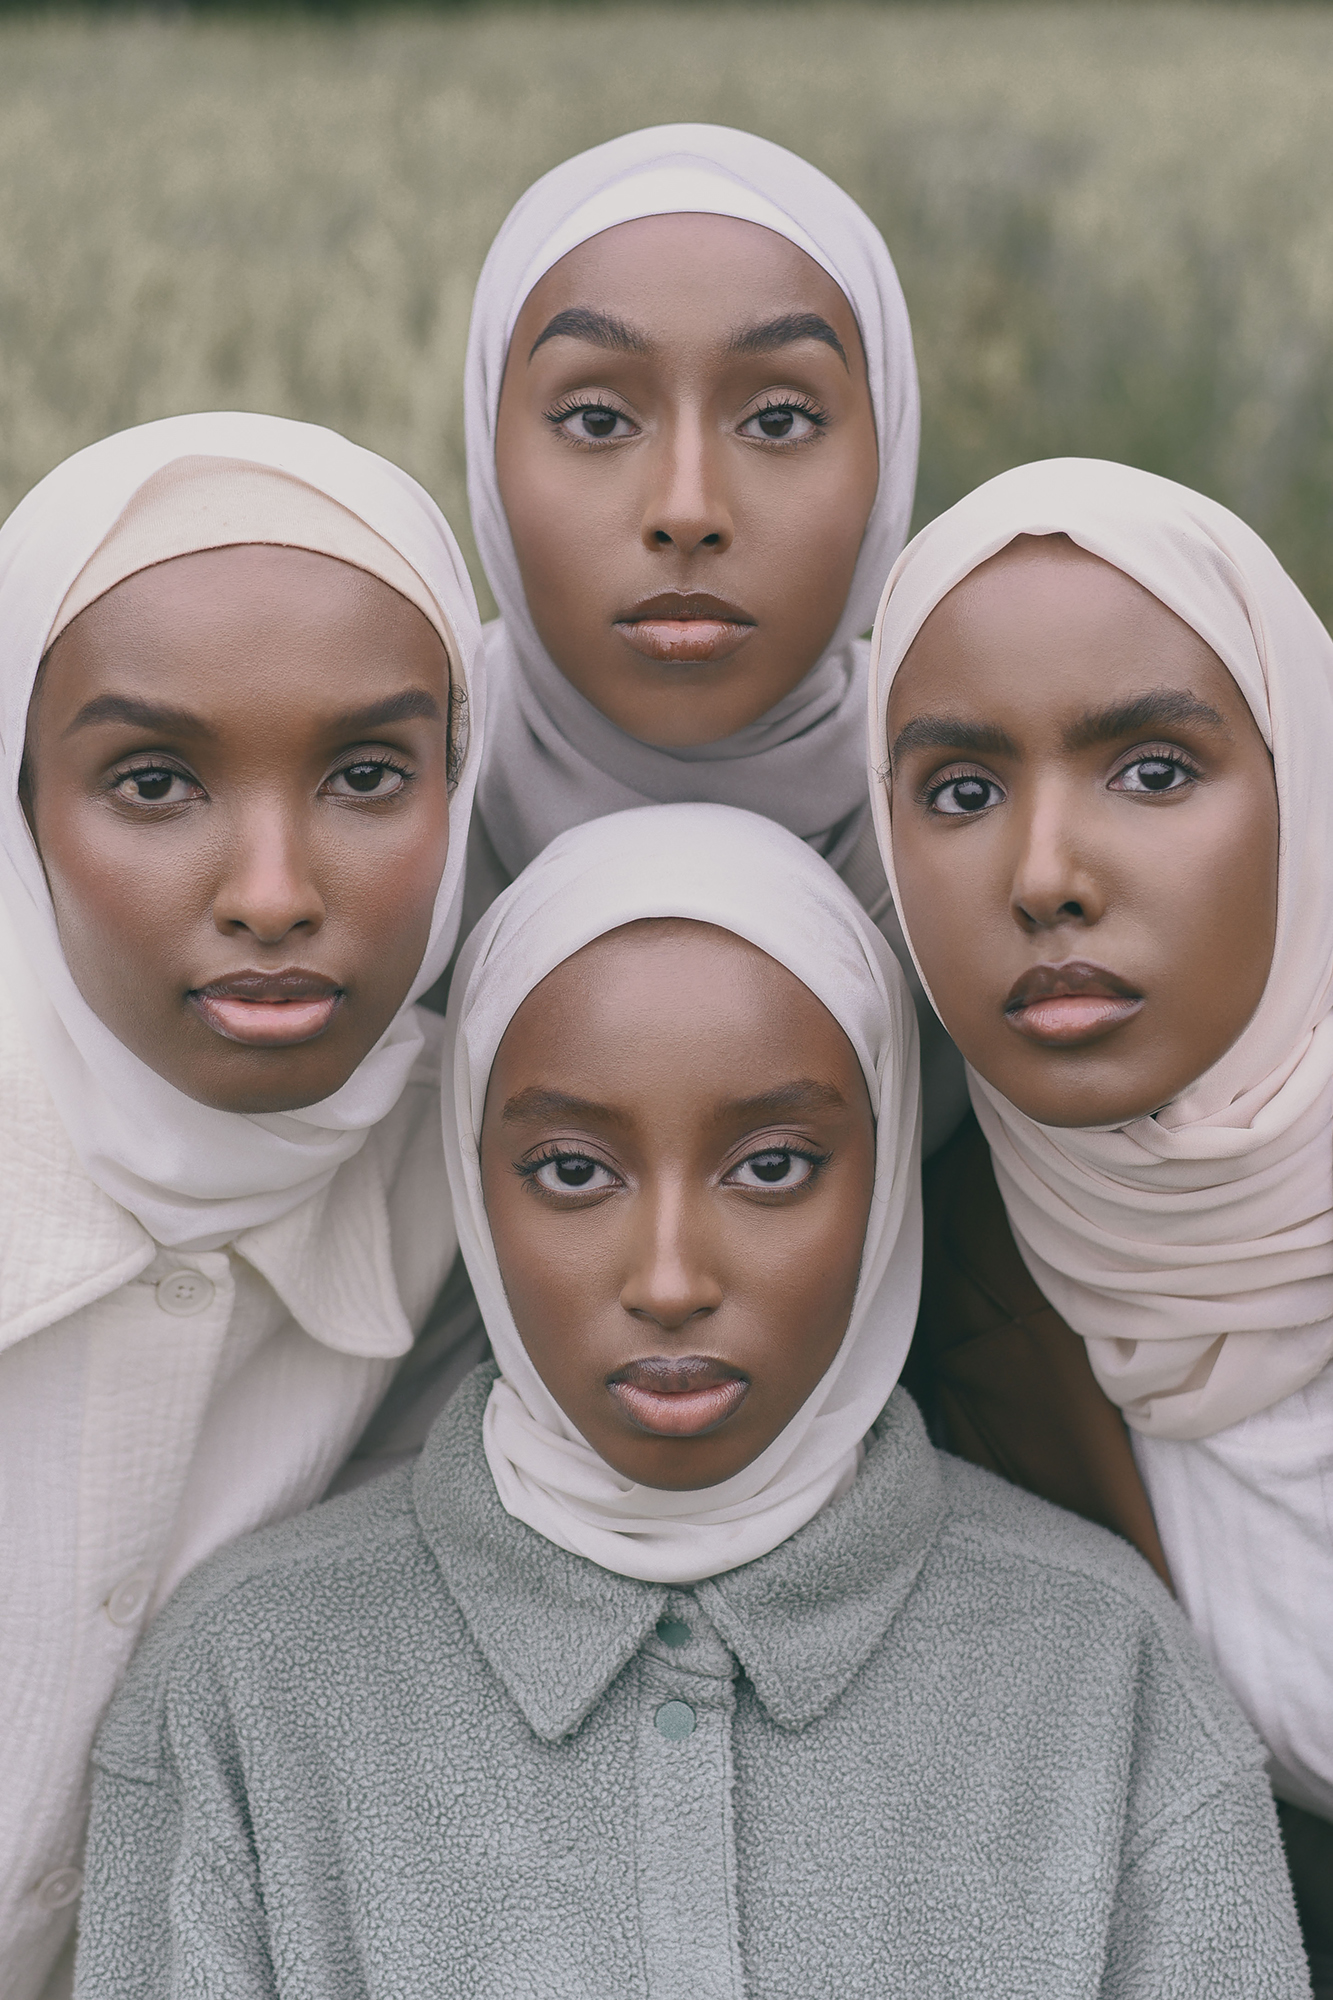 Ryhmäkuva, muotikuva. Neljä tummaihoista nuorta naista poseeraa symmetrisessä muodostelmassa, kasvot ja katse kohdistettuina kameraan. 